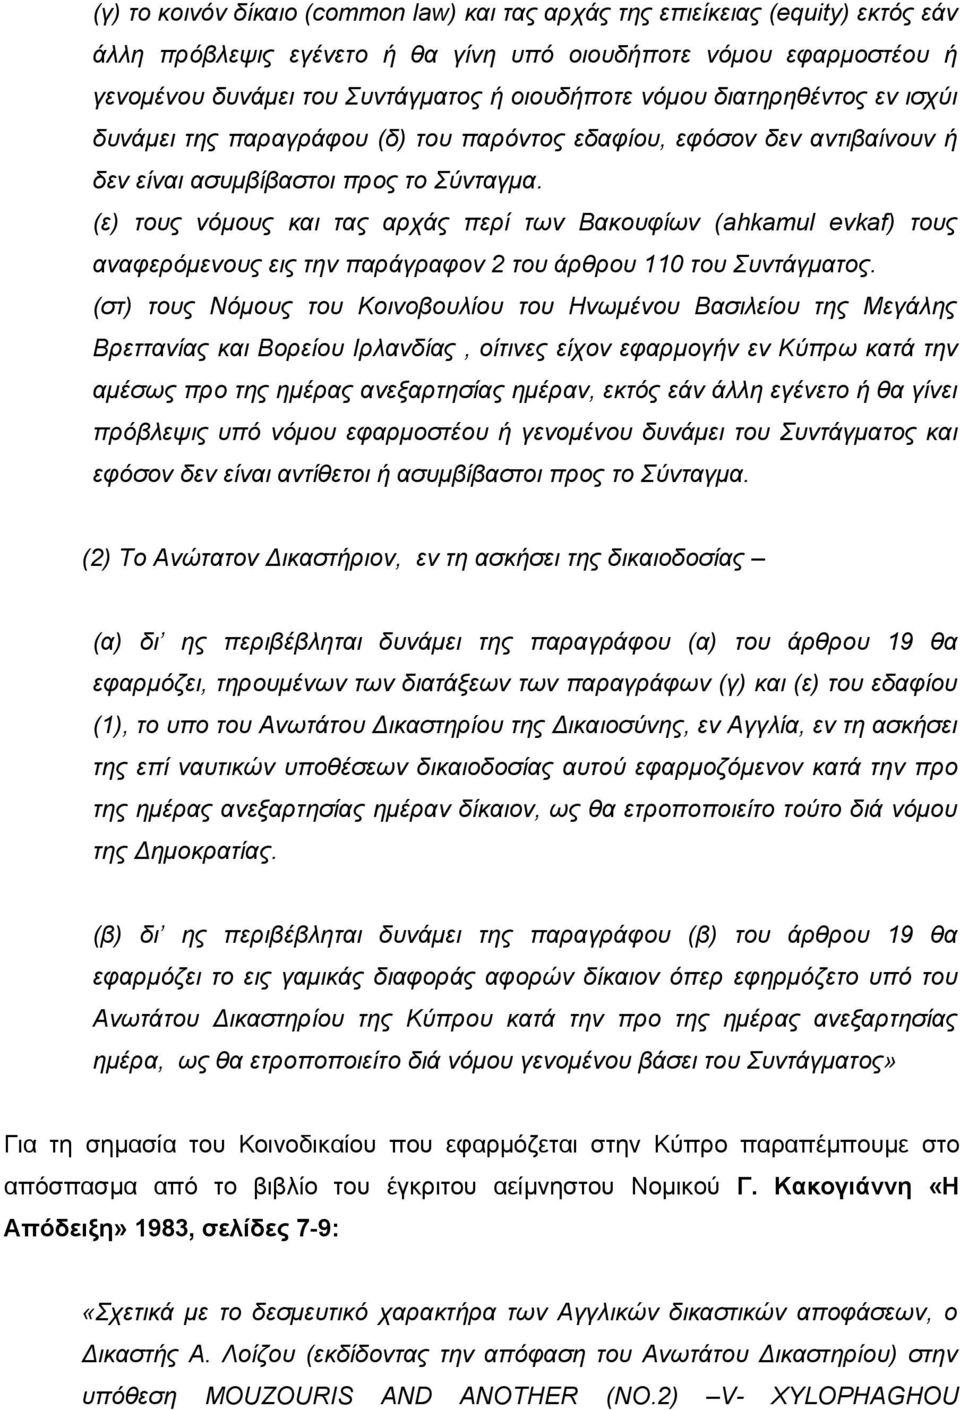 (ε) τους νόμους και τας αρχάς περί των Βακουφίων (ahkamul evkaf) τους αναφερόμενους εις την παράγραφον 2 του άρθρου 110 του Συντάγματος.